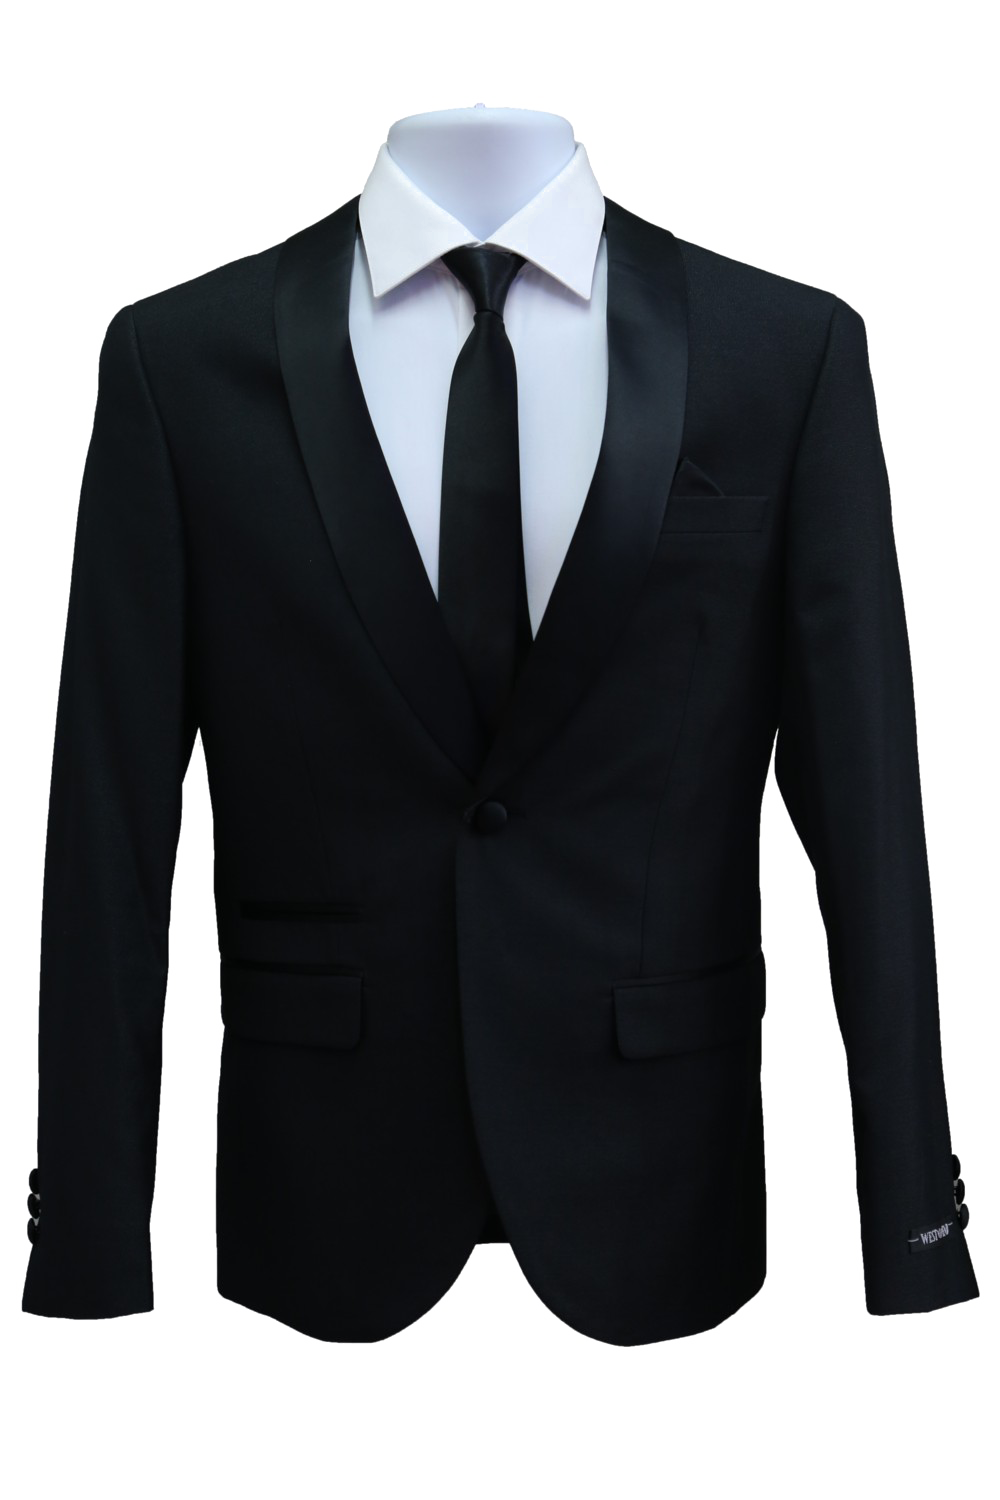 Black Suit PNG Transparent Image